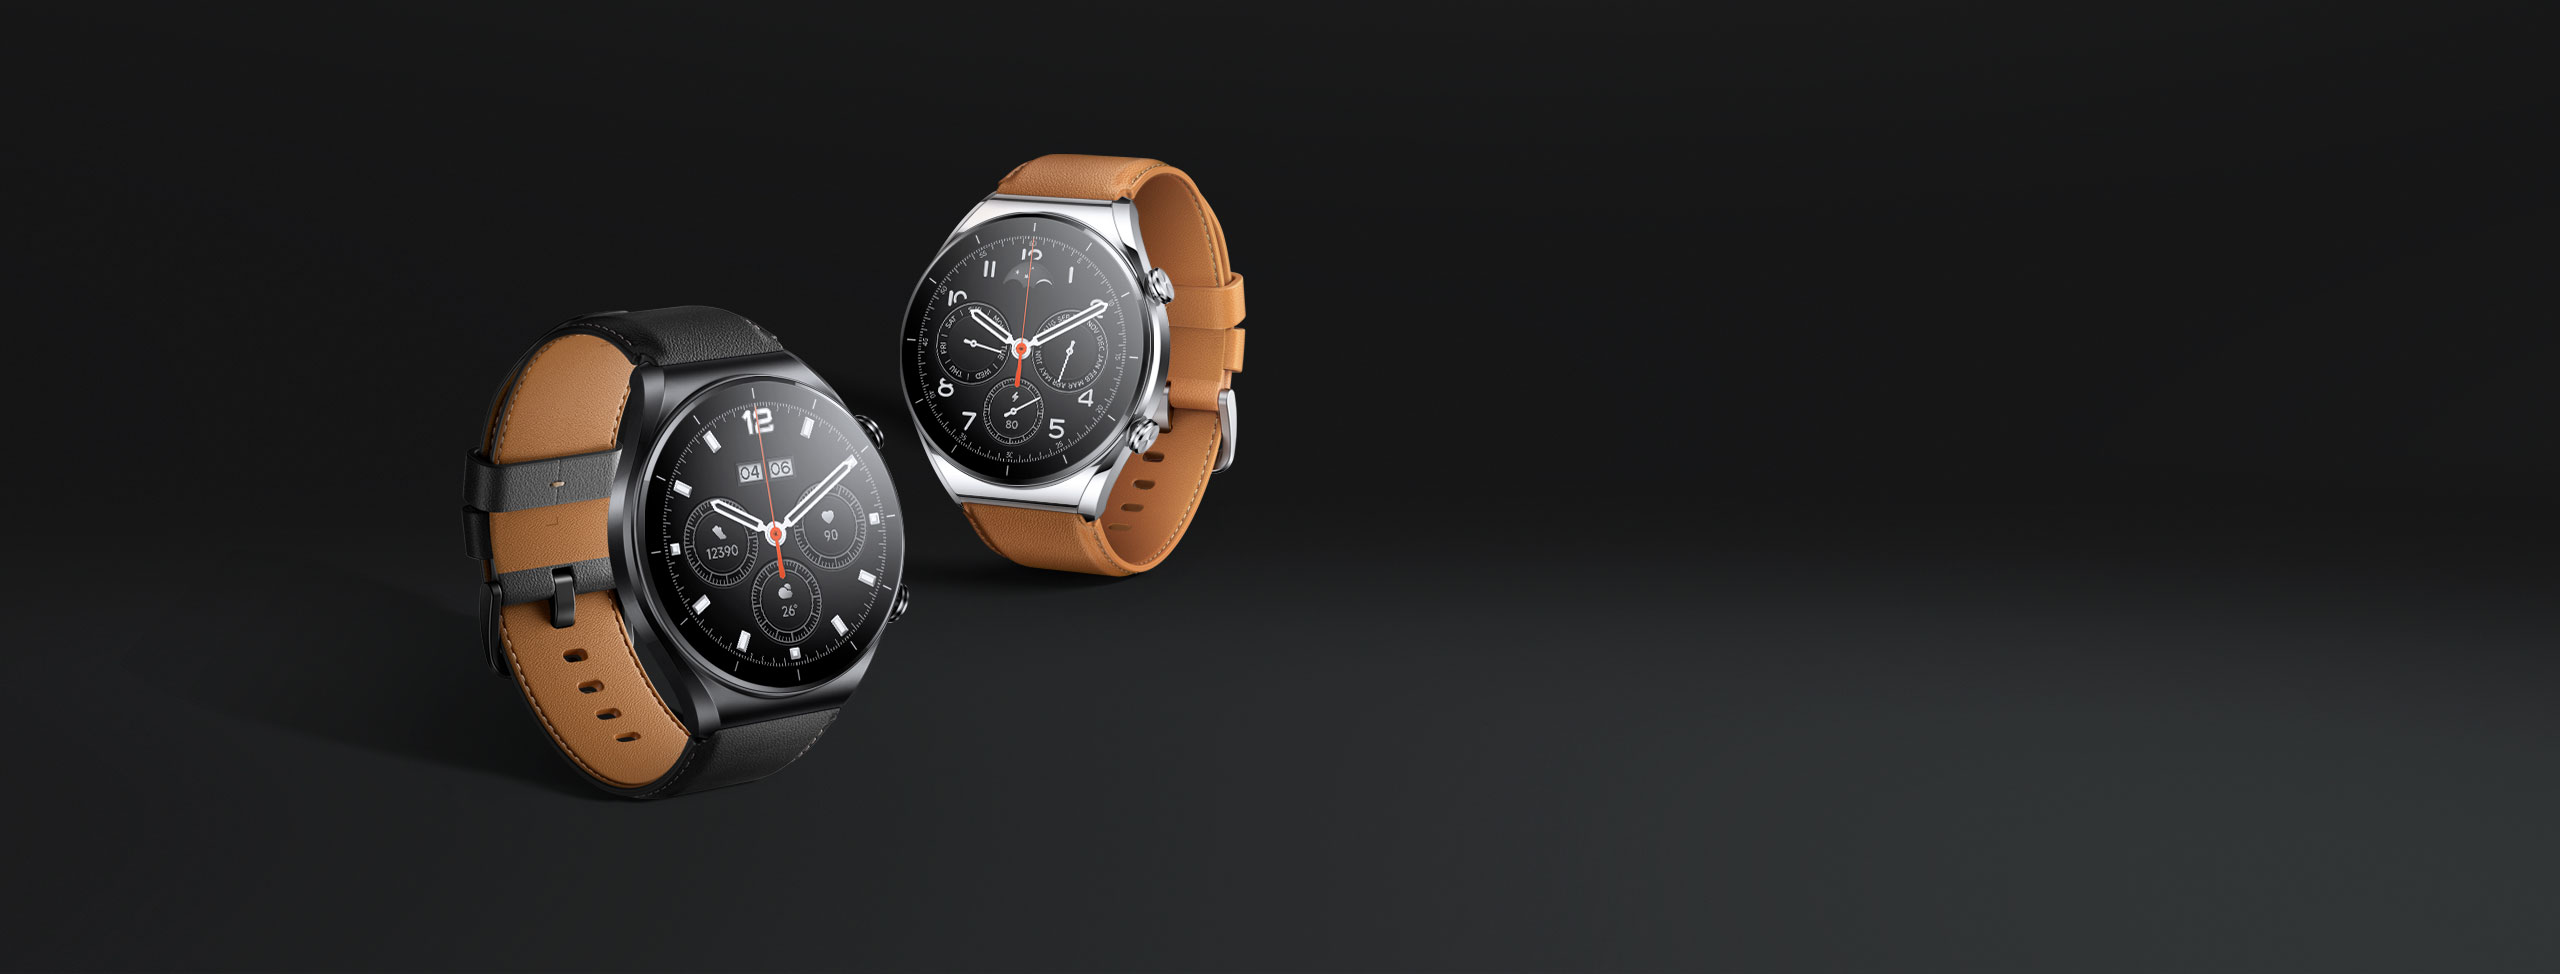 Вышли смарт-часы Xiaomi Watch S1